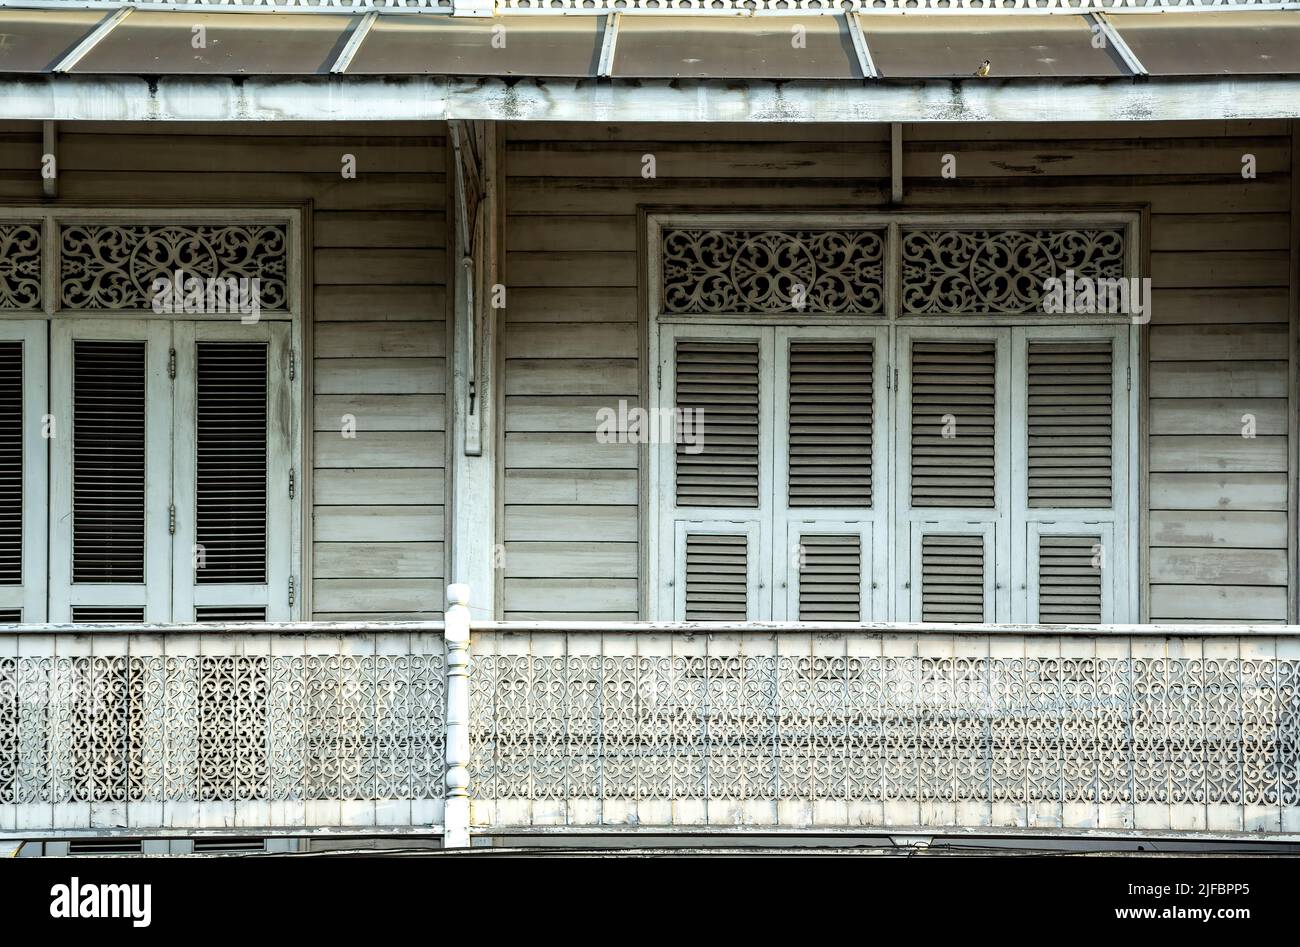 Windows and balcony, Chiang Mai, Thailand Stock Photo